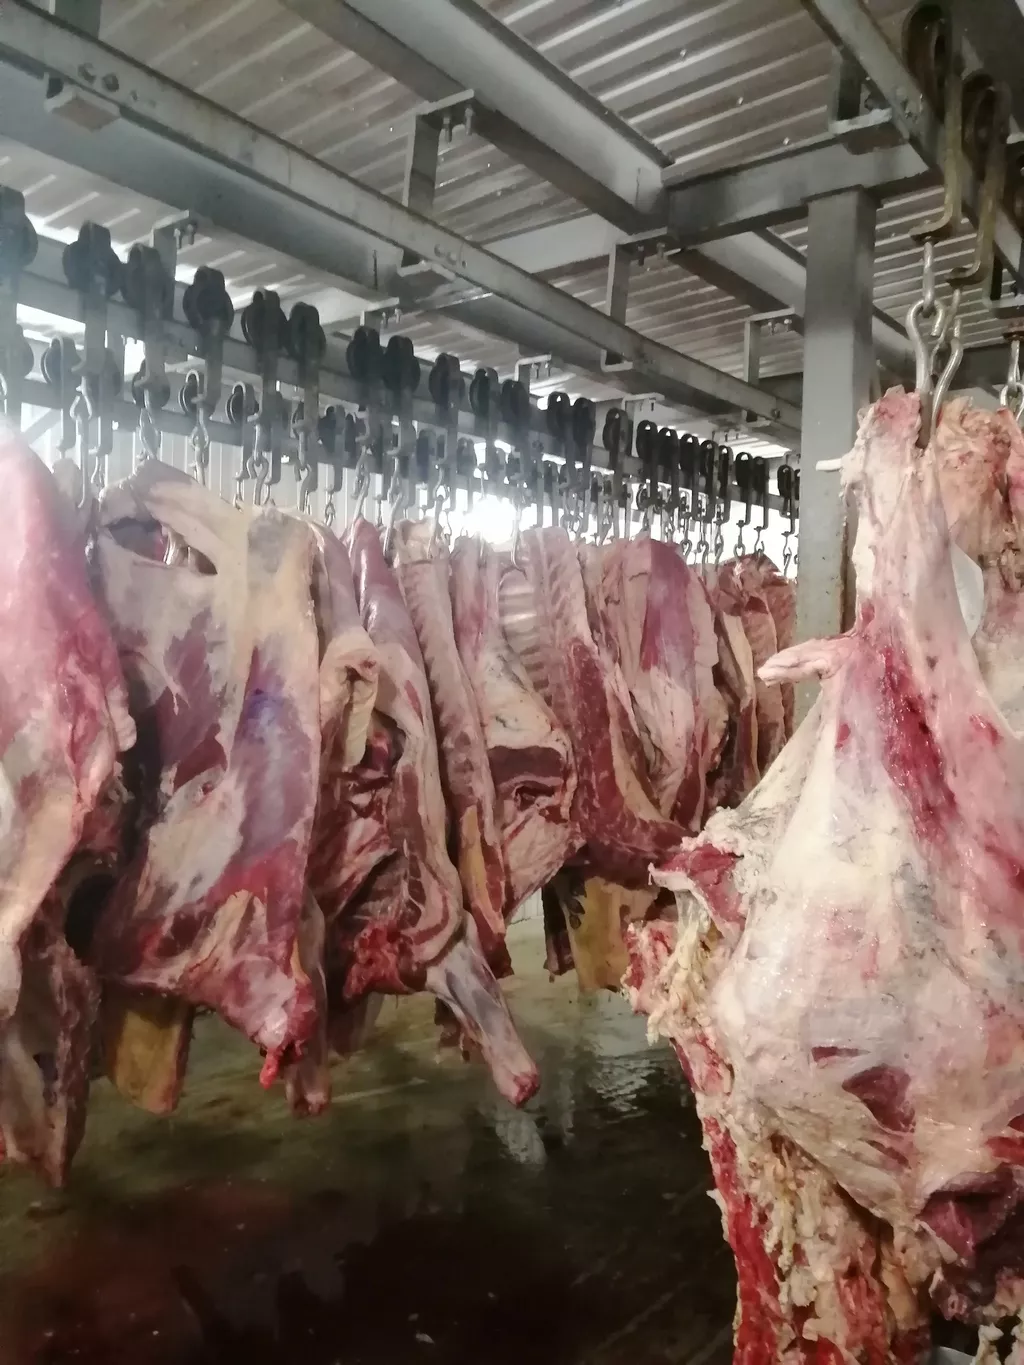 мясо говядины в полутушах в Барнауле и Алтайском крае